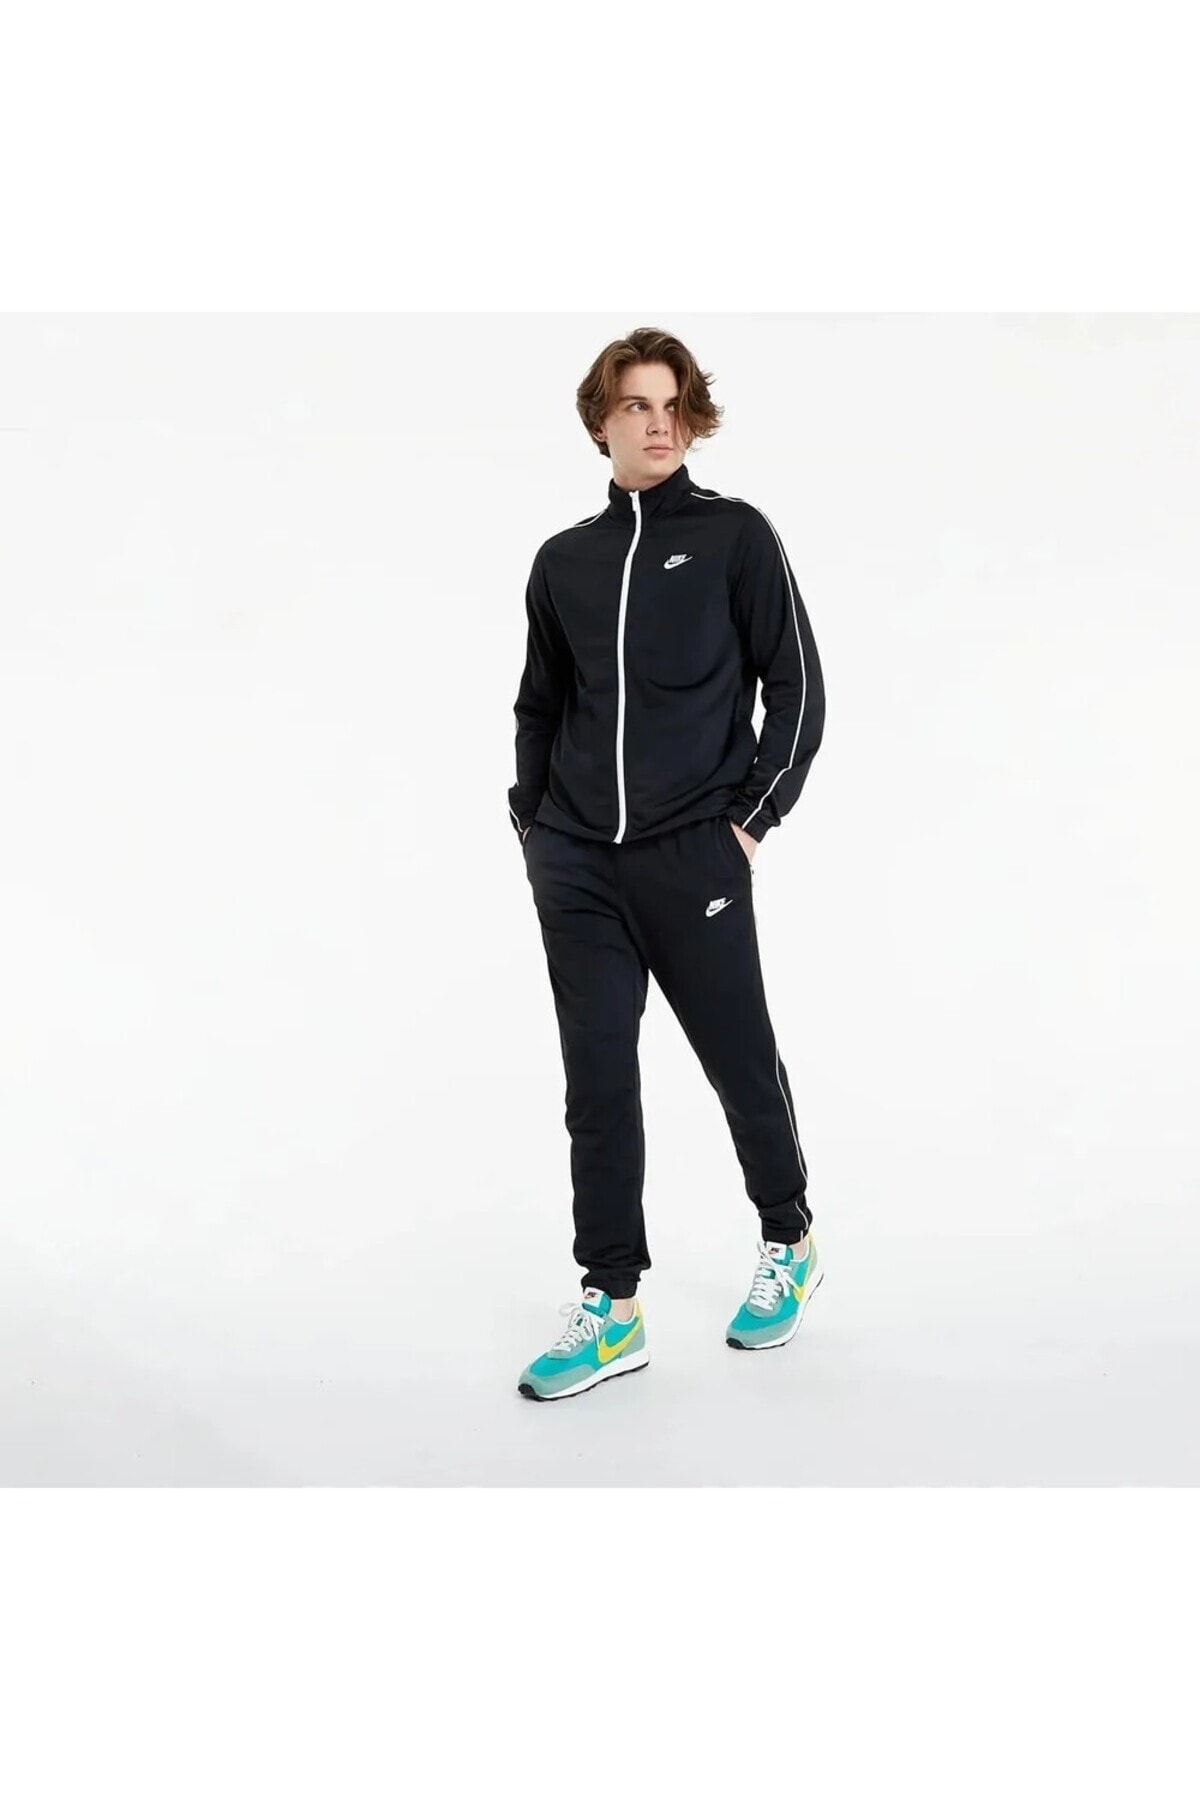 Tracksuit Men\'s Set Black Nike DN4369-010 Sportswear